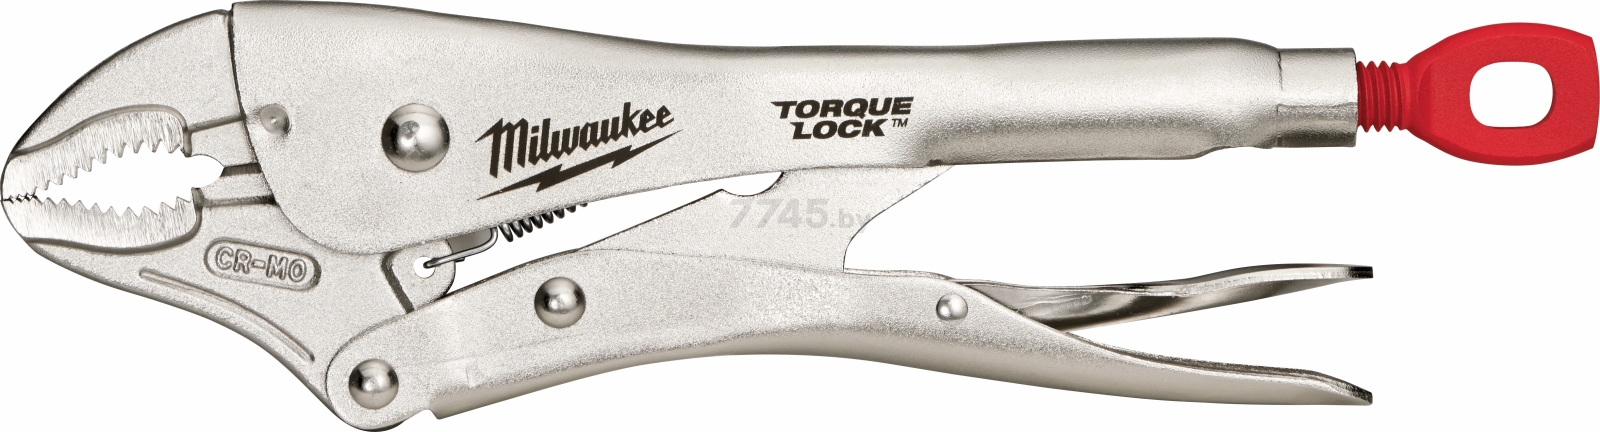 Зажим с фиксатором MILWAUKEE Torque Lock 250 мм изогнутые губки (4932471725)